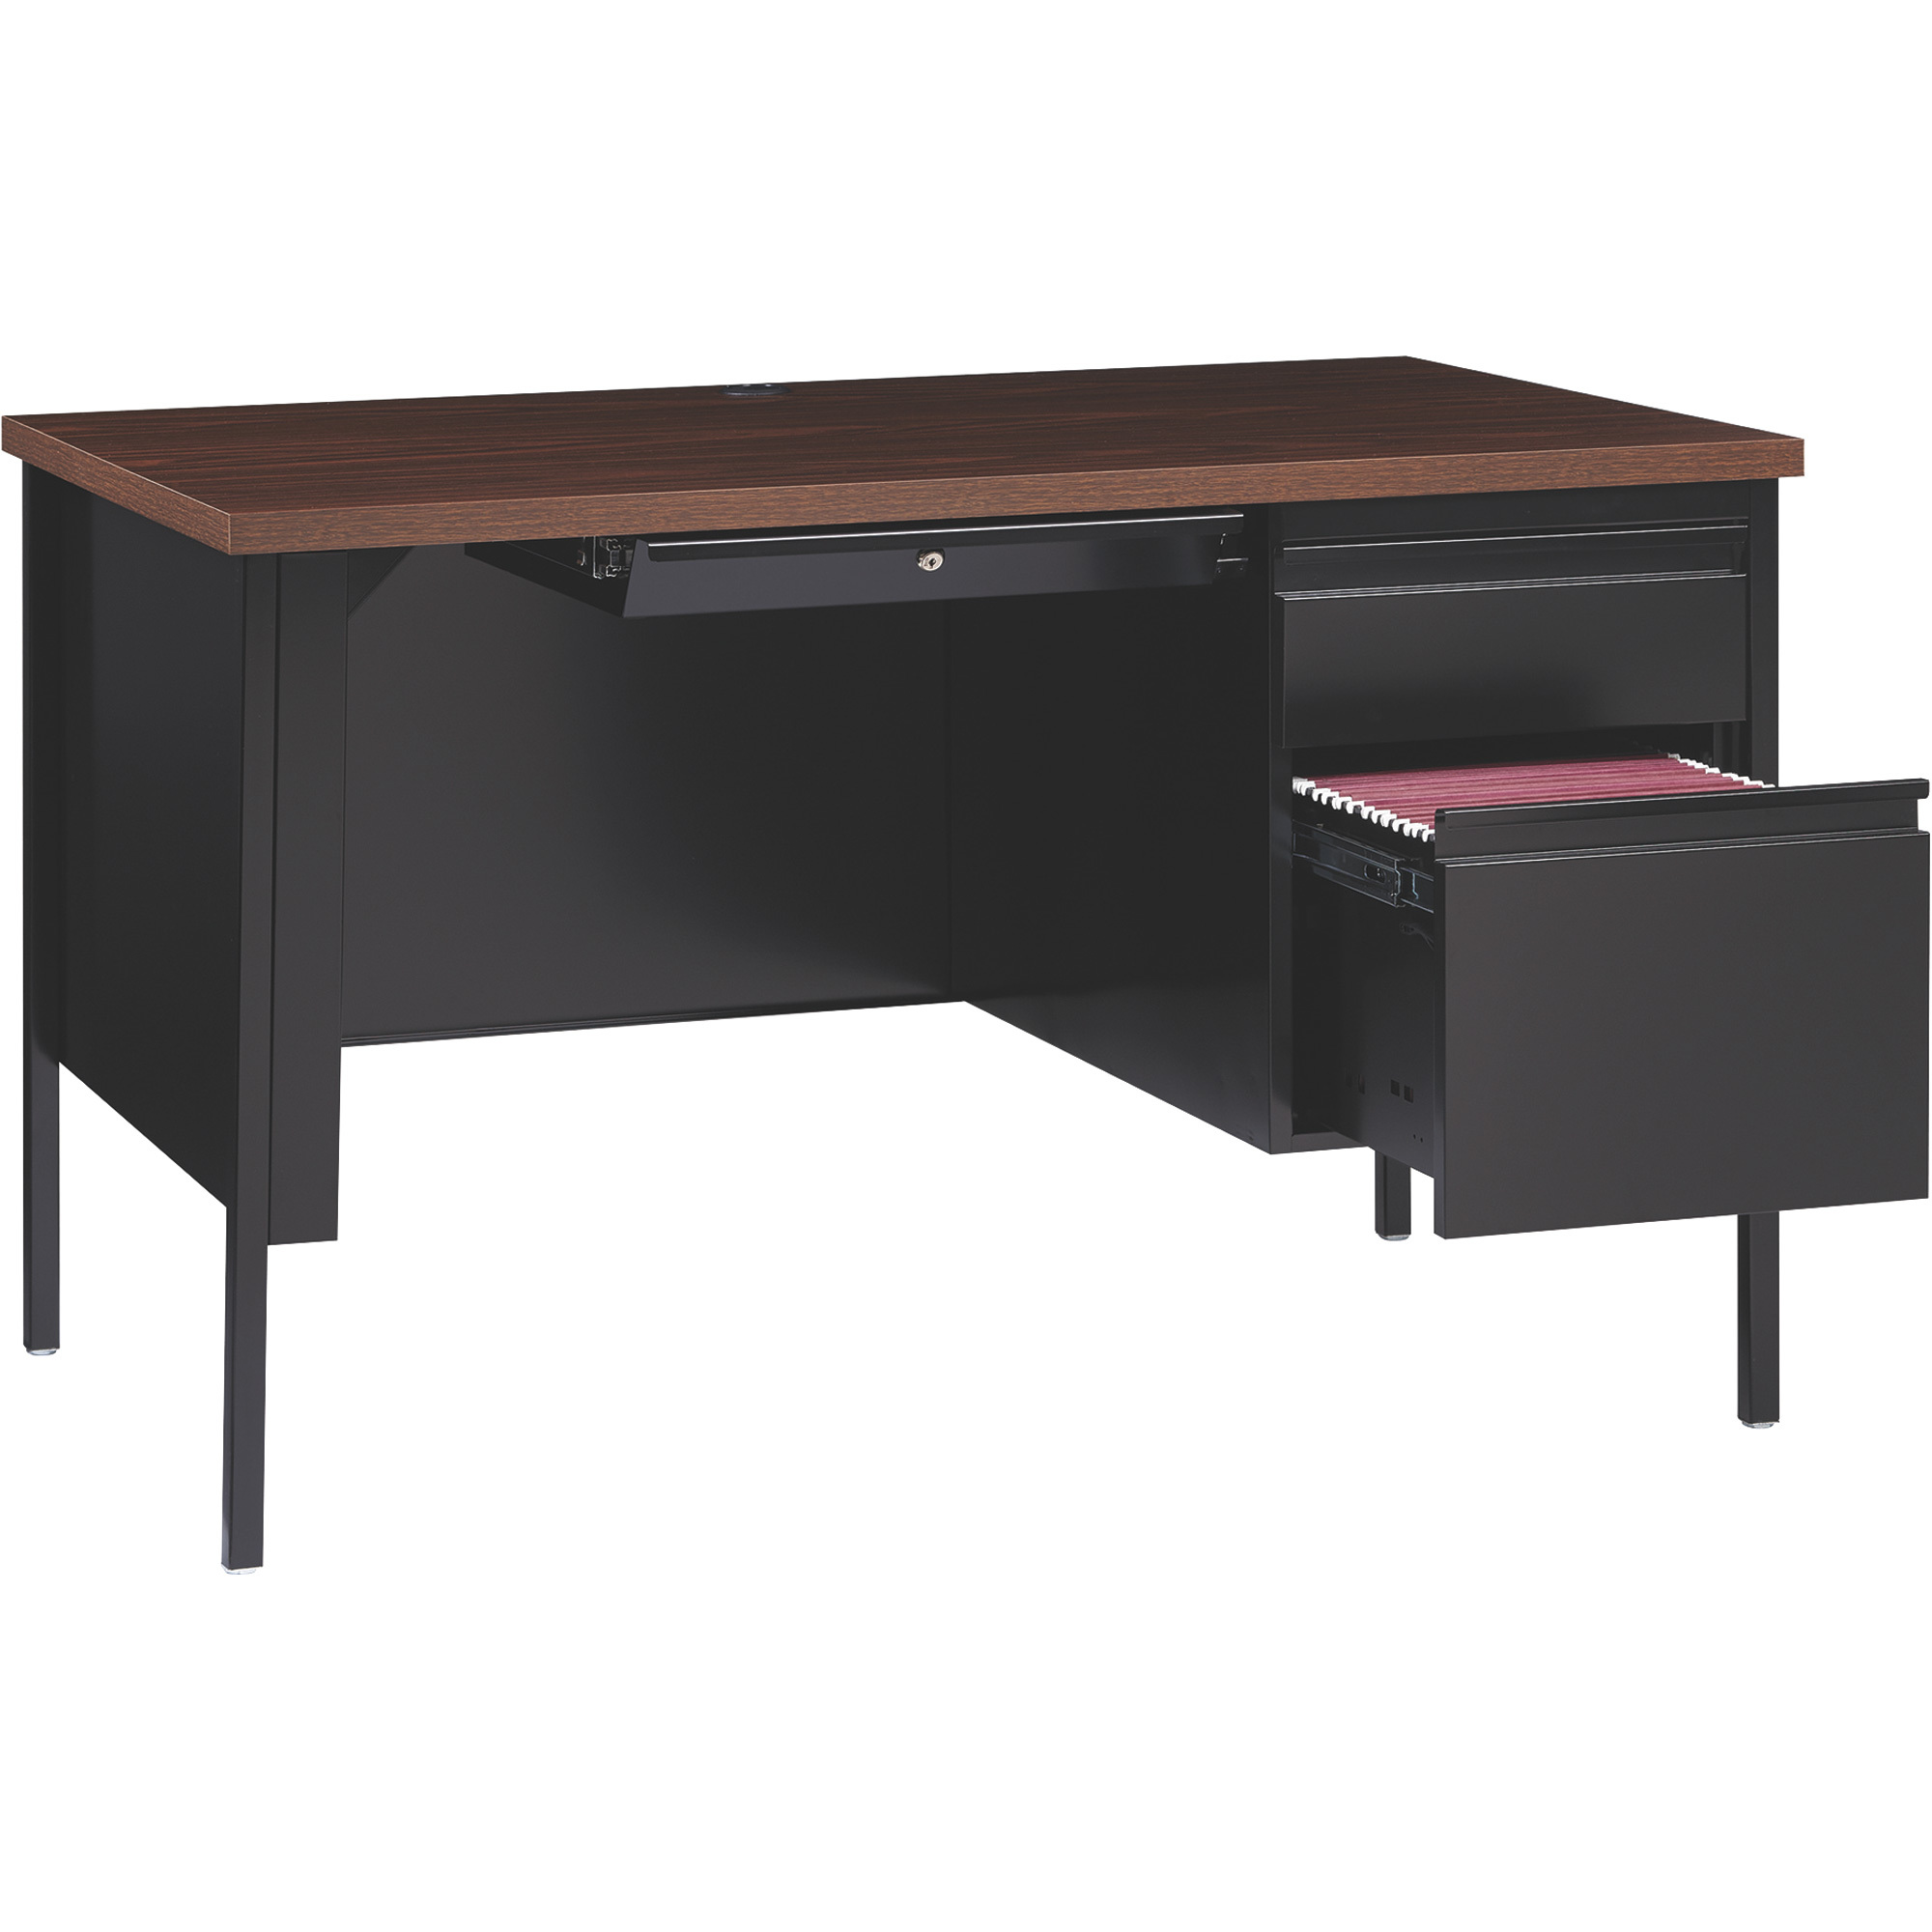 Traditional Pedestal Desk — Black/Walnut, 48Inch W x 30Inch D x 29 1/2Inch H, Model - Hirsh Industries 20092